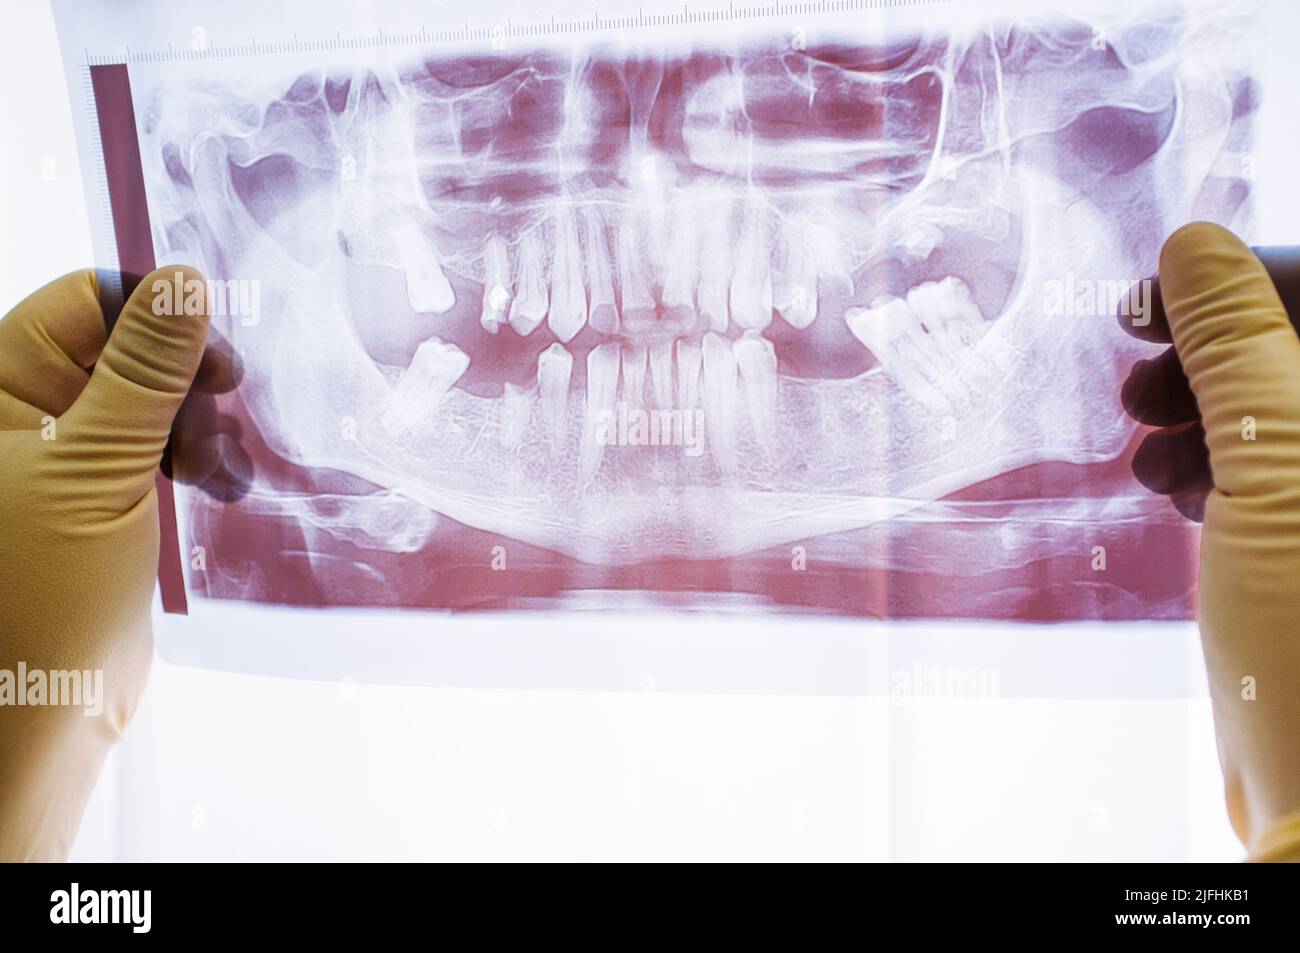 Radiographie dentaire avec problèmes de parodontite Banque D'Images